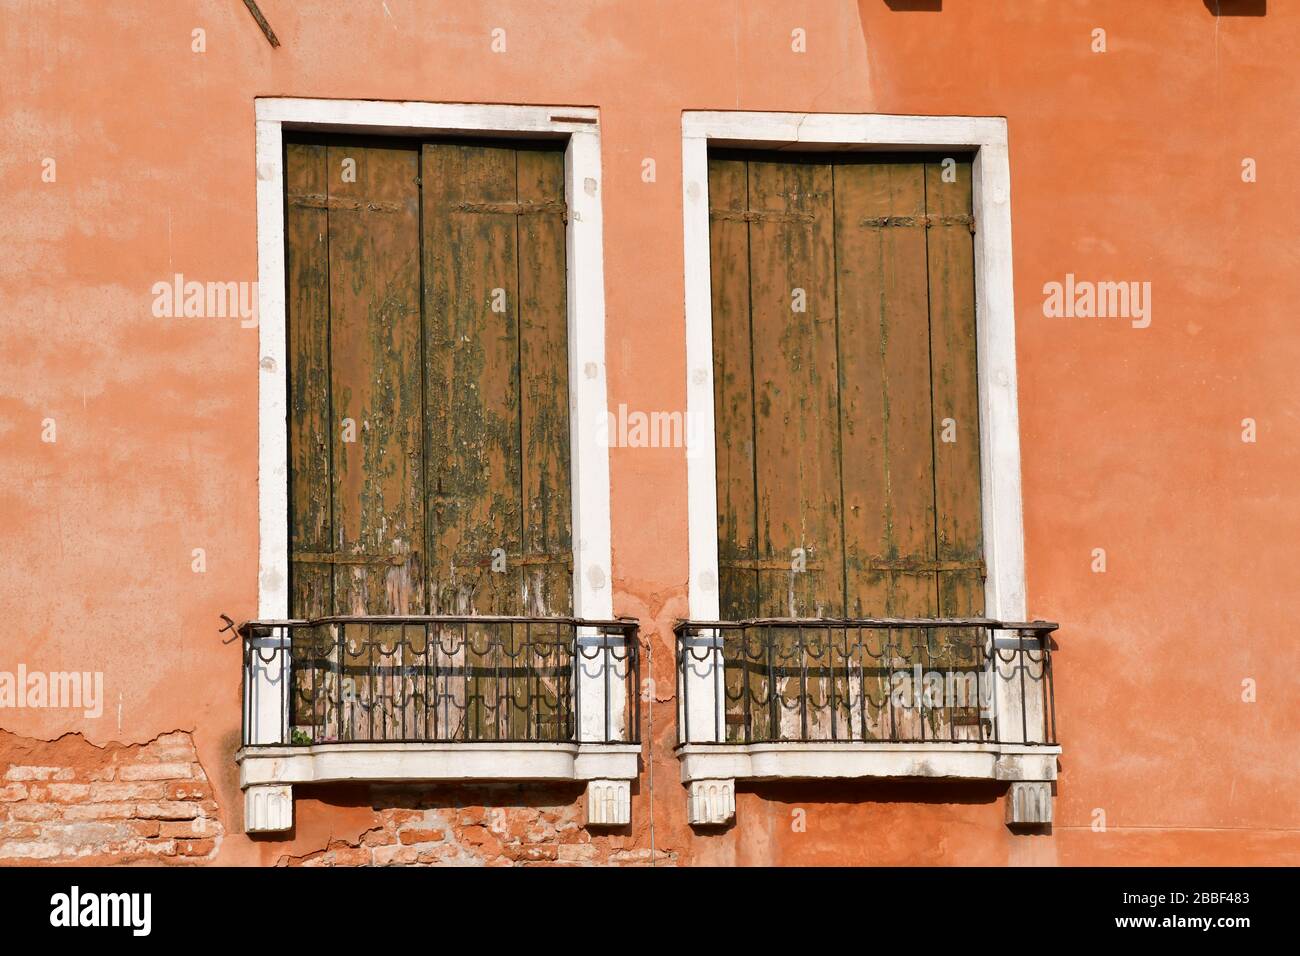 Nahansicht des Fensterabschnitts eines der historischen Gebäude in Venedig; Blenden deutlich verwittert und Wand etwas verblasst Stockfoto